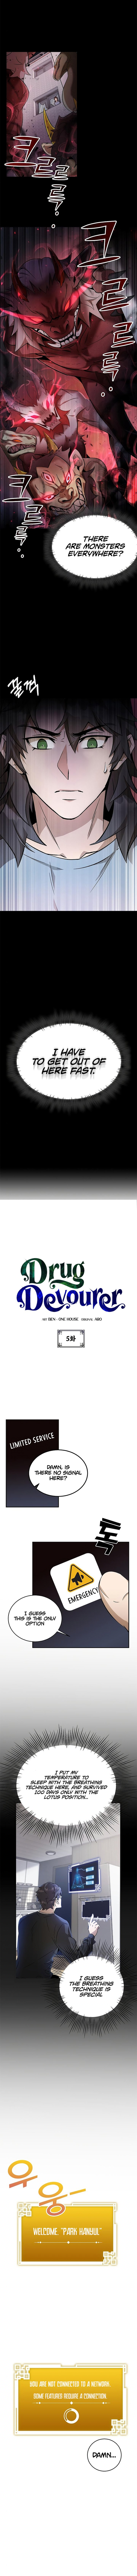 Drug Devourer Chapter 5 Page 3